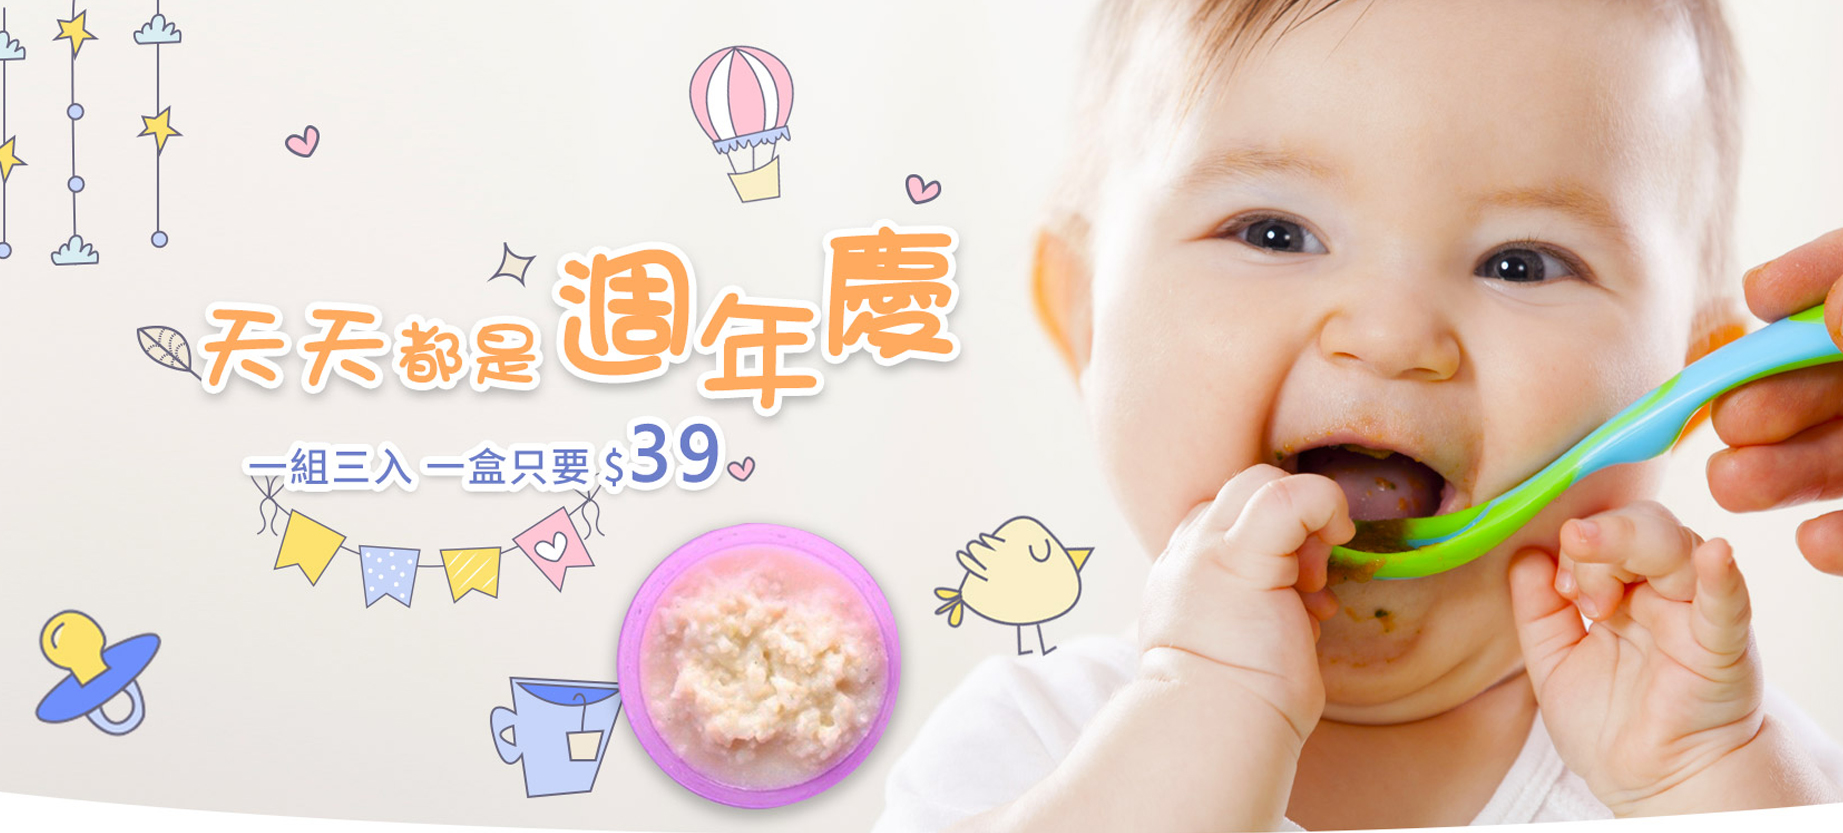 亮媽寶寶粥-健康營養副食品-網站形象圖